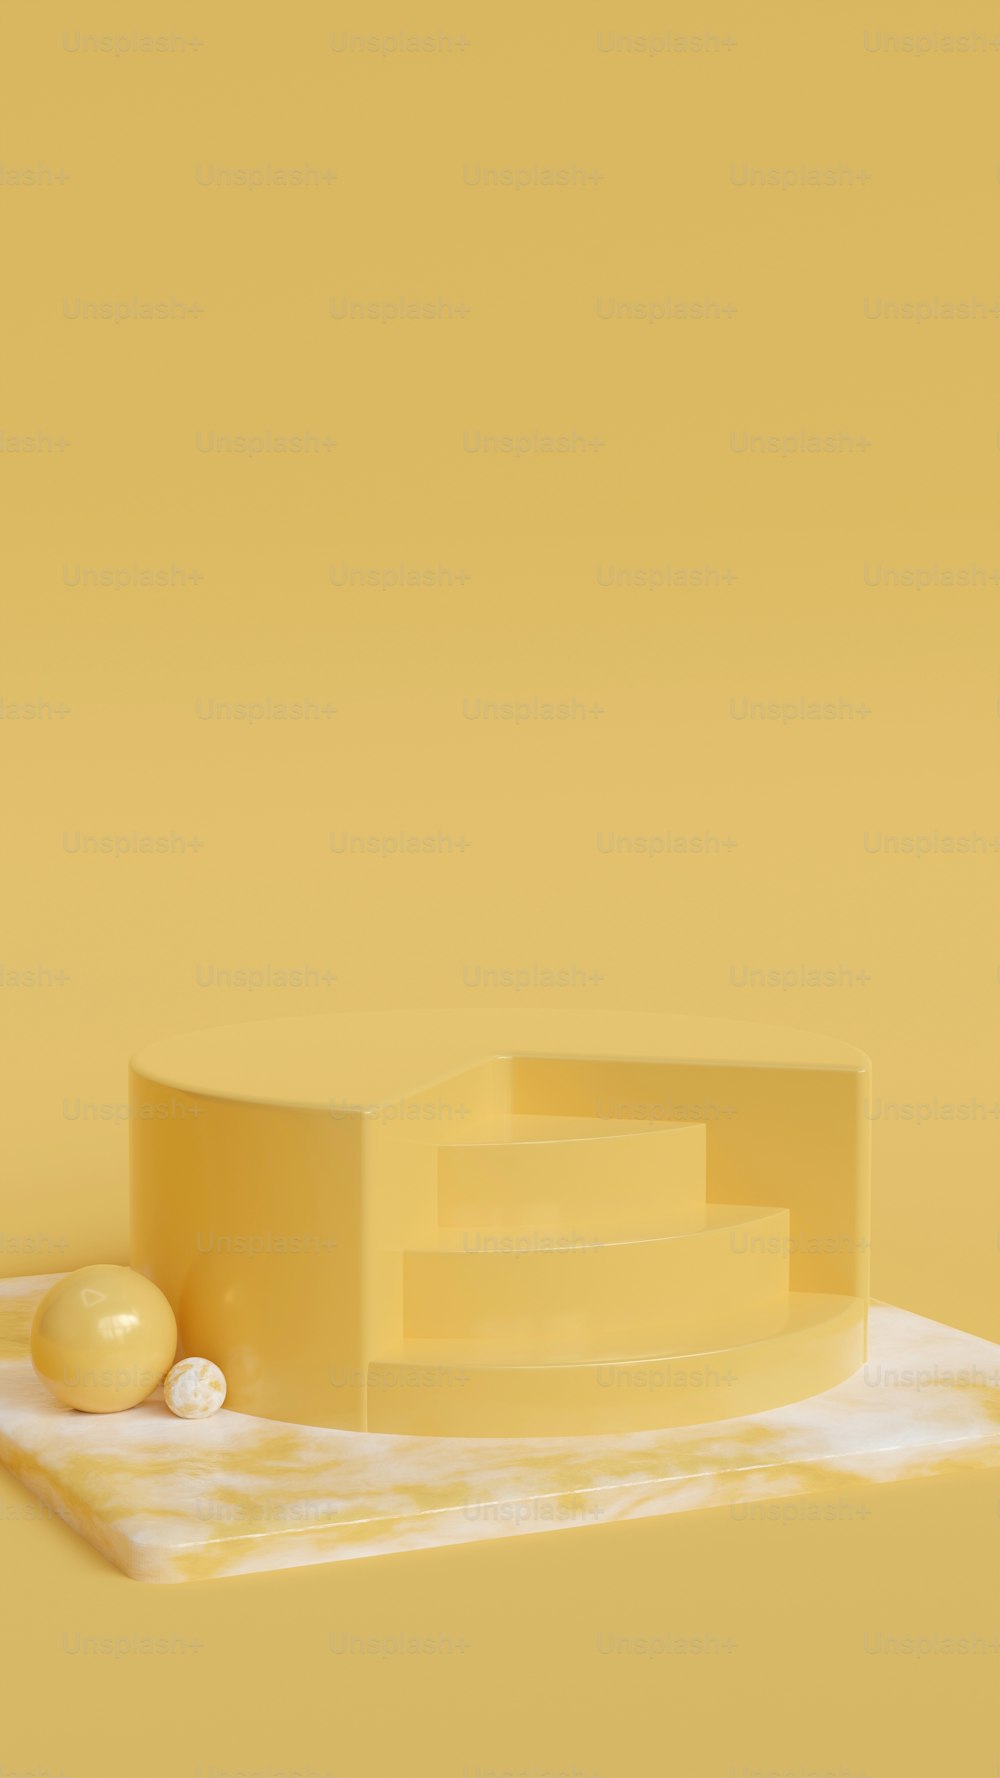 un morceau de fromage posé sur une table